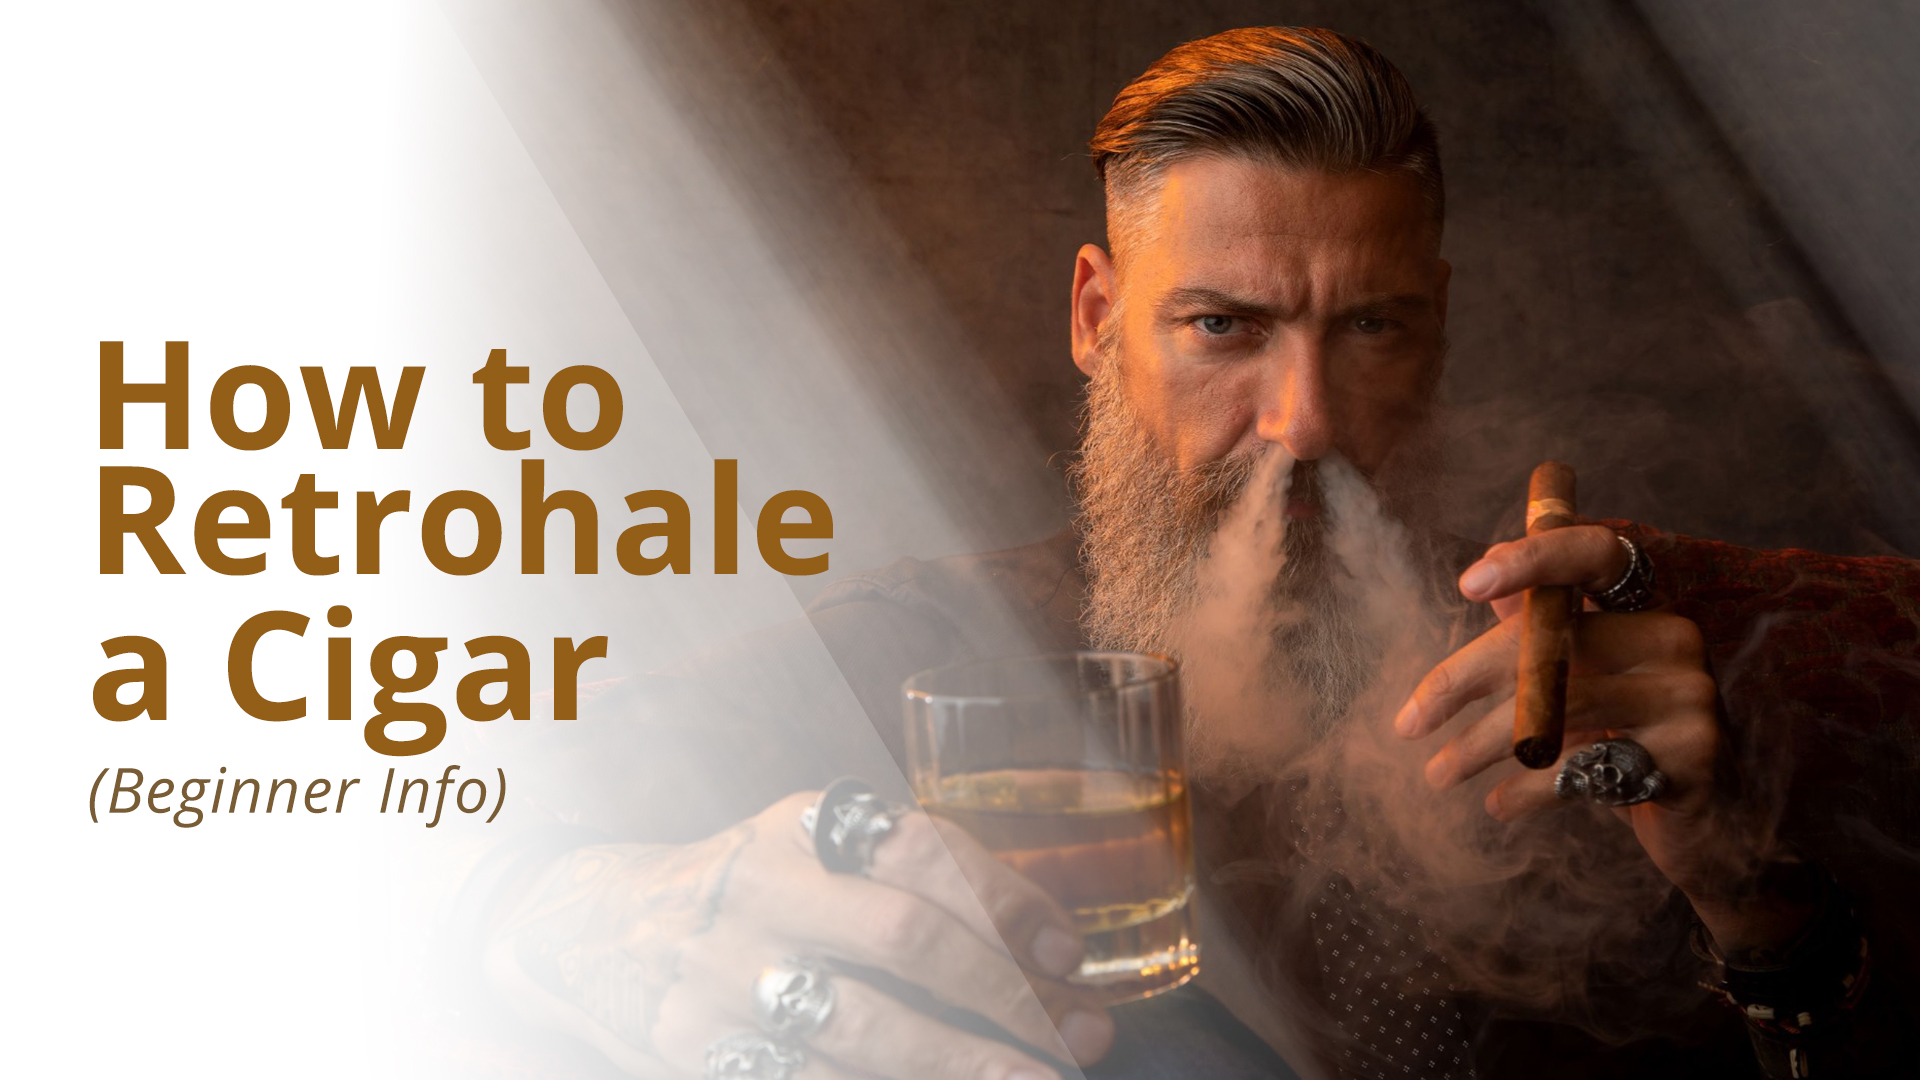 How to retrohale a cigar